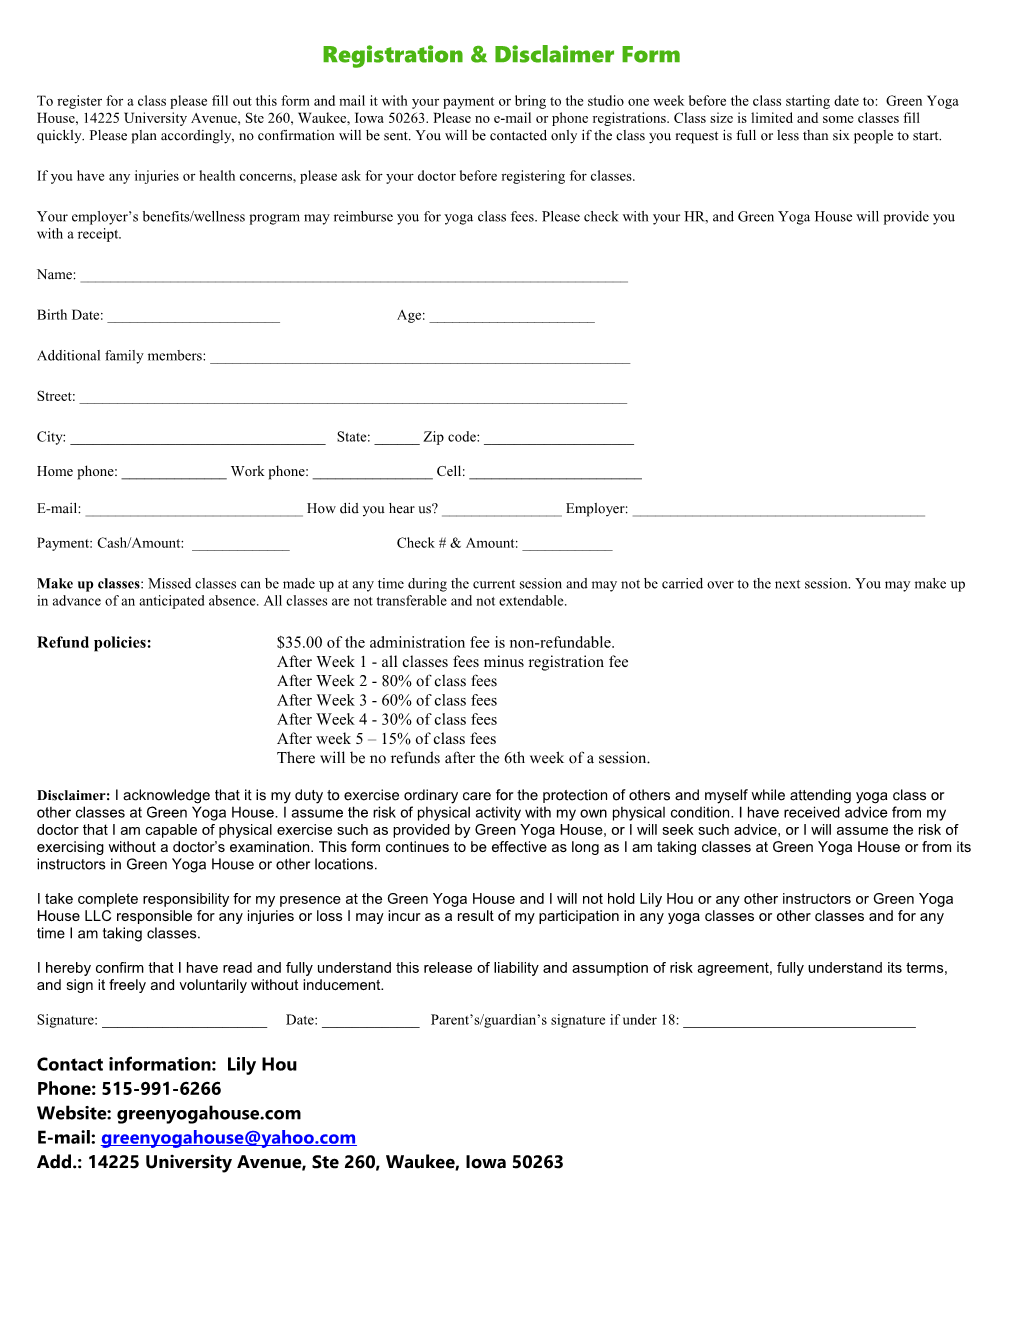 Registration & Disclaimer Form